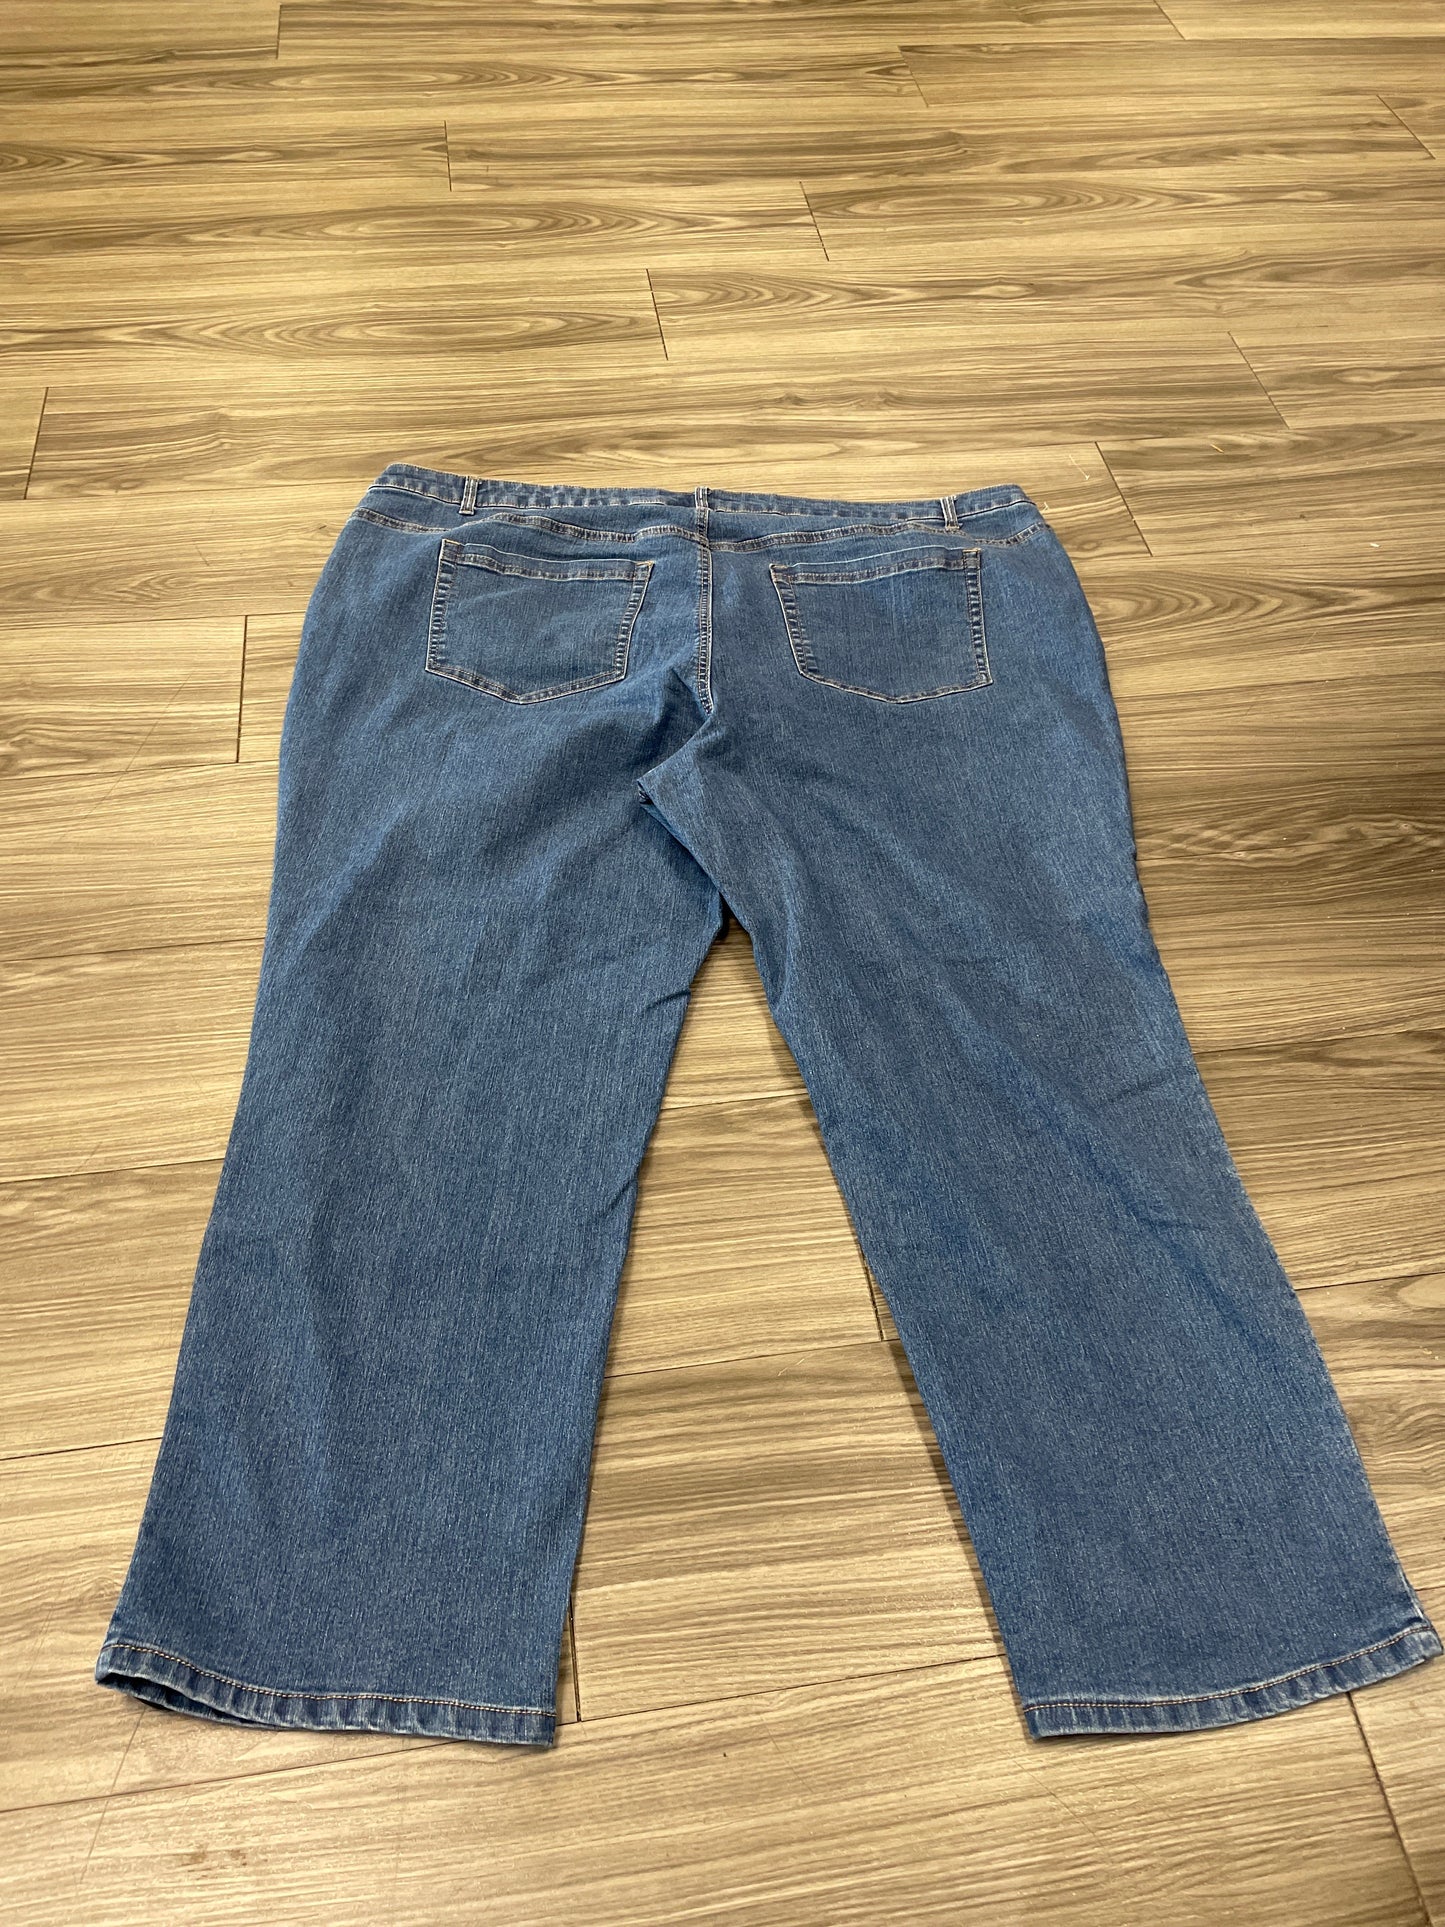 Jeans Straight By Denim 24/7  Size: 30w